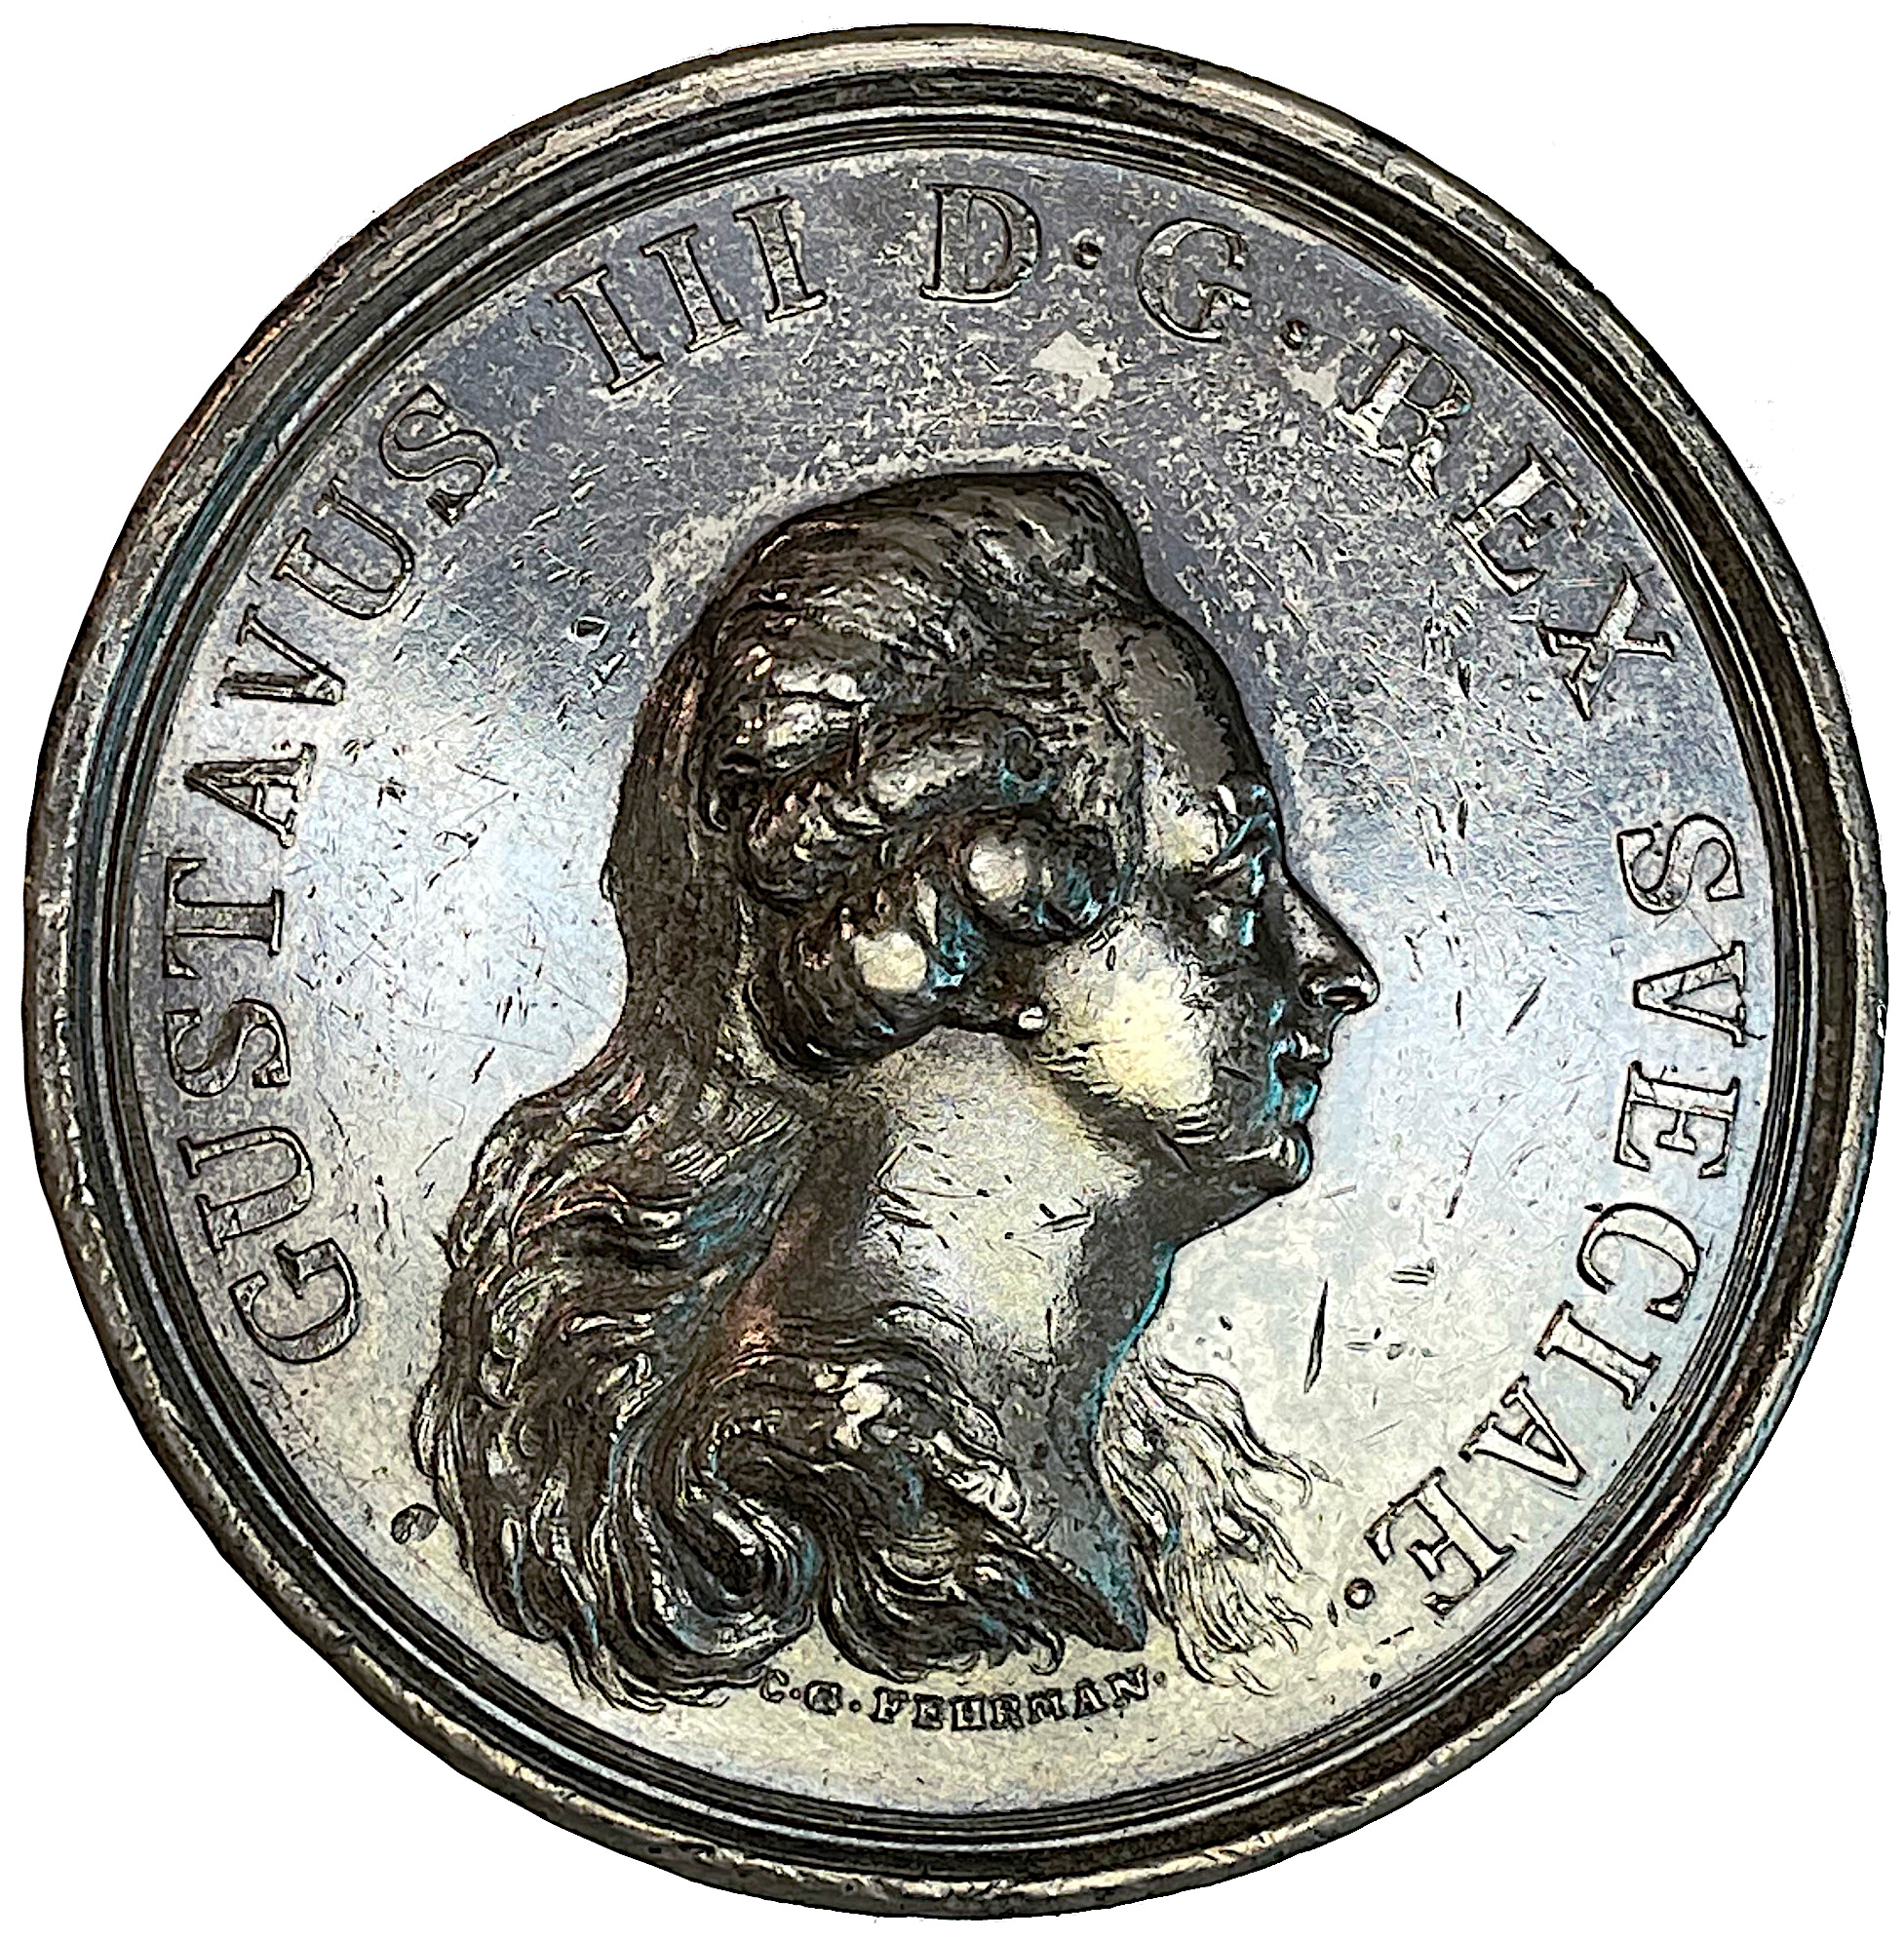 Gustav III:s stadsvälvning den 19 augusti 1772 av Carl Gustaf Fehrman - Mycket sällsynt RR